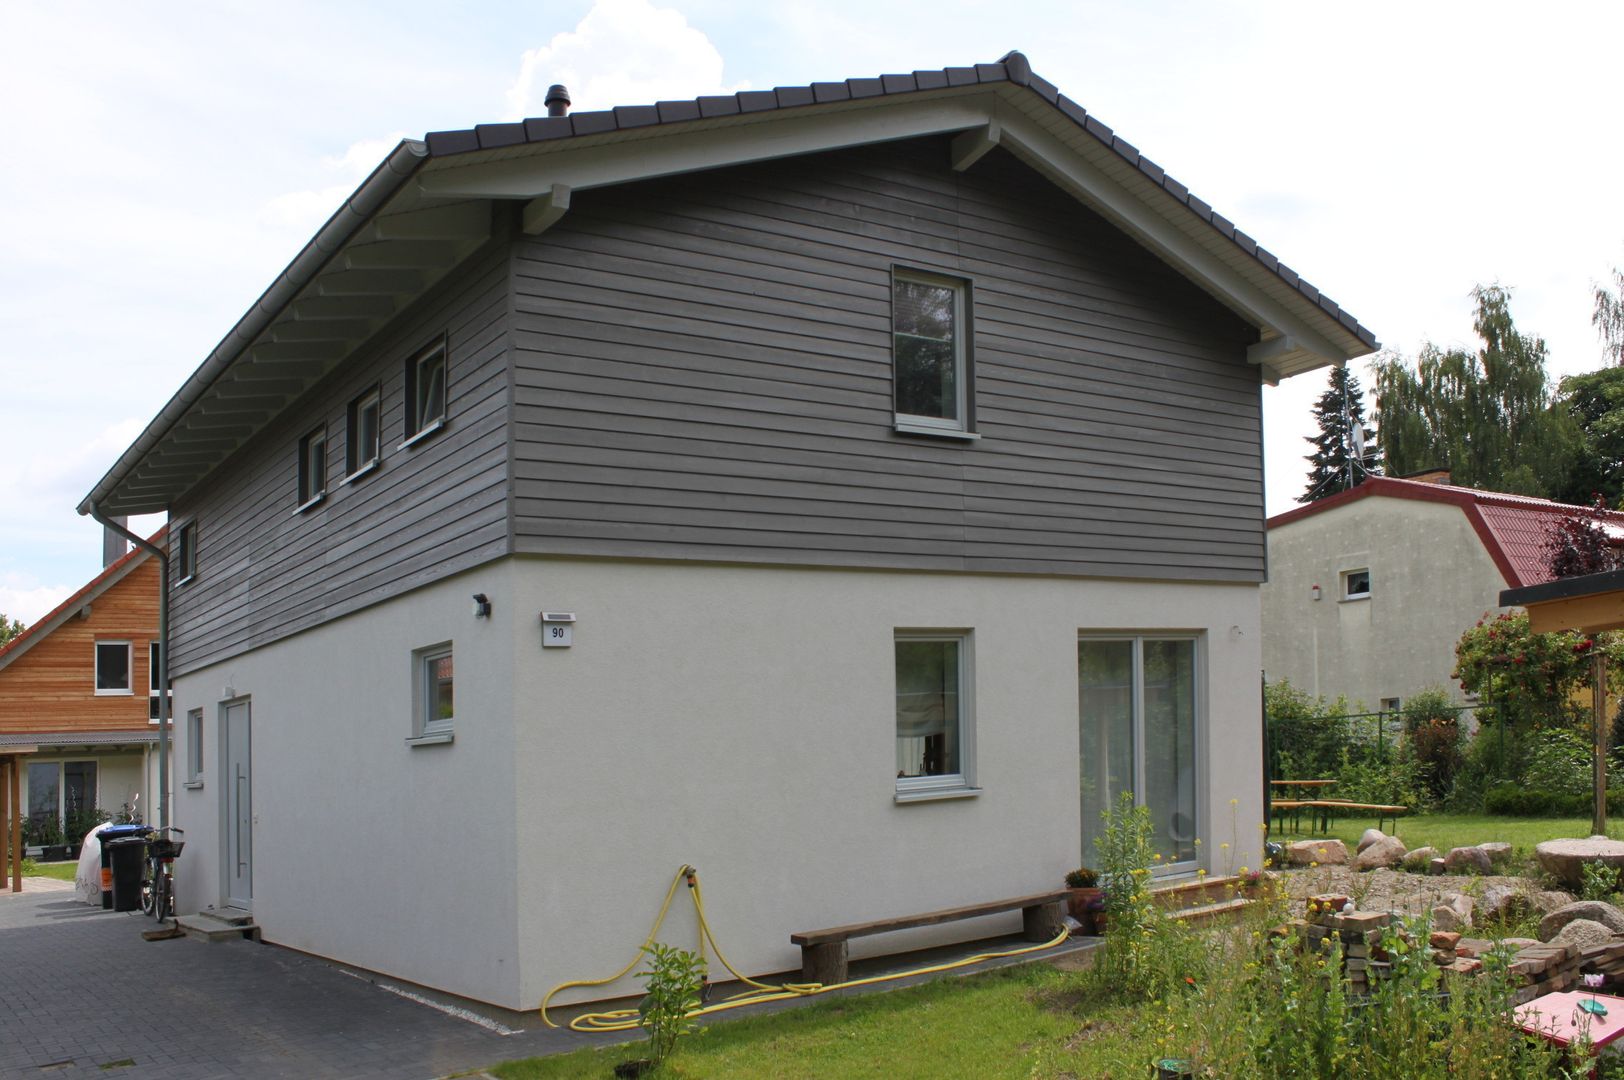 Wohngesundes Holzhaus - modern und kostengünstig, Neues Gesundes Bauen Neues Gesundes Bauen Moderne huizen